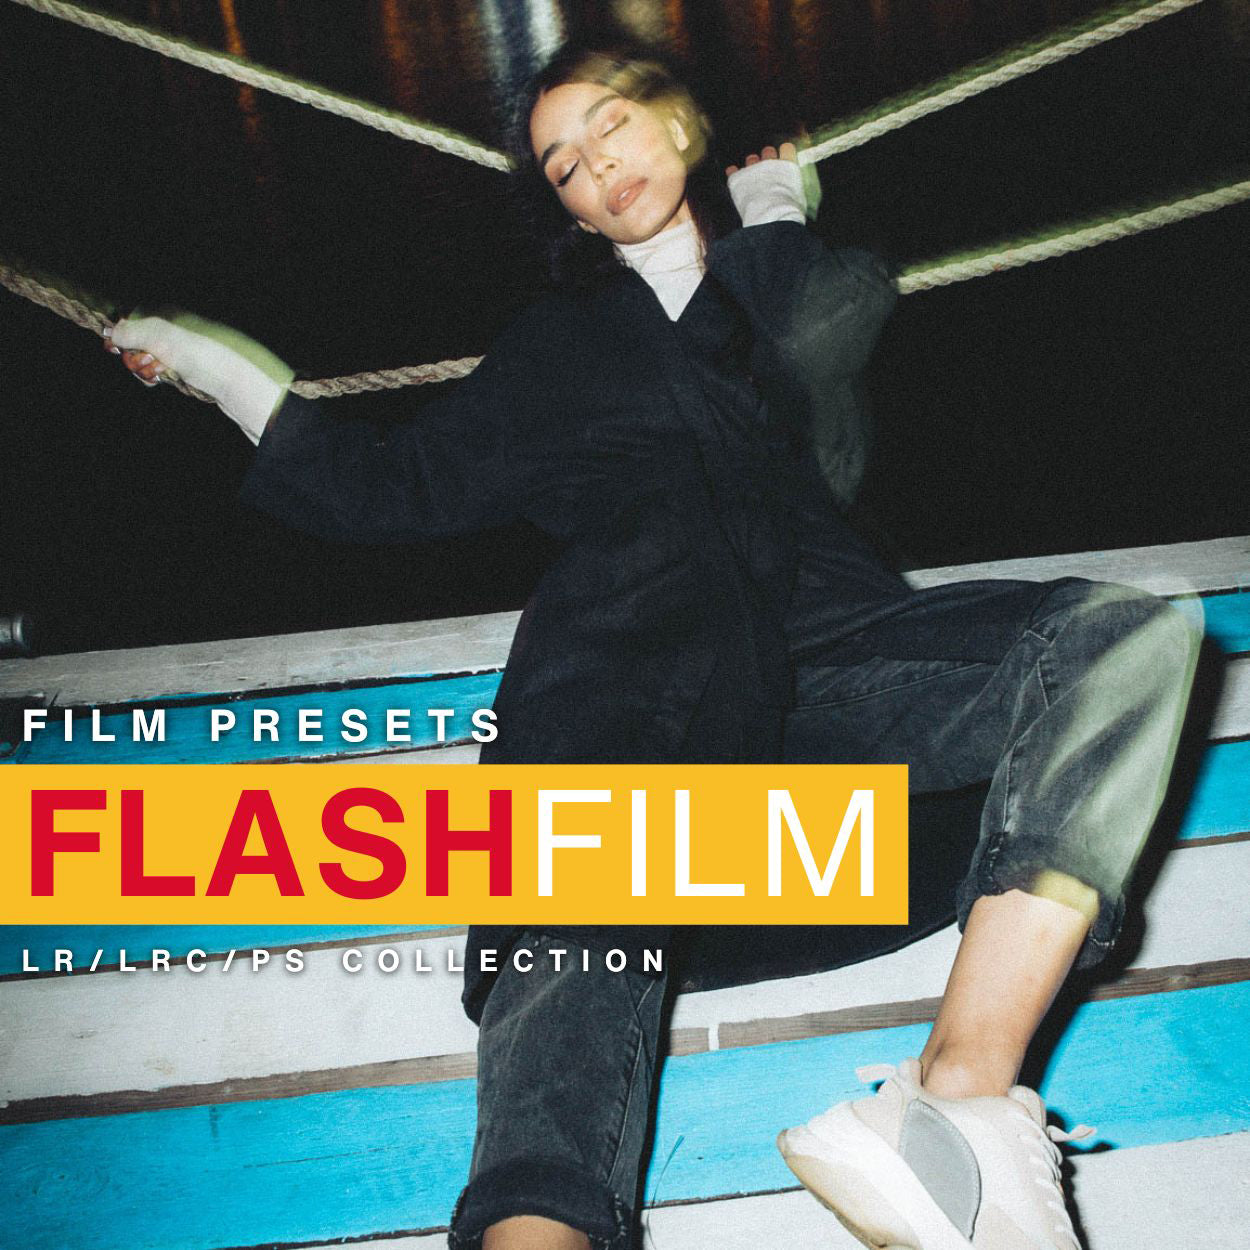 Flash Film Lightroom Presets Adobe Film Filter For Lightroom & Photoshop By Lou & Marks